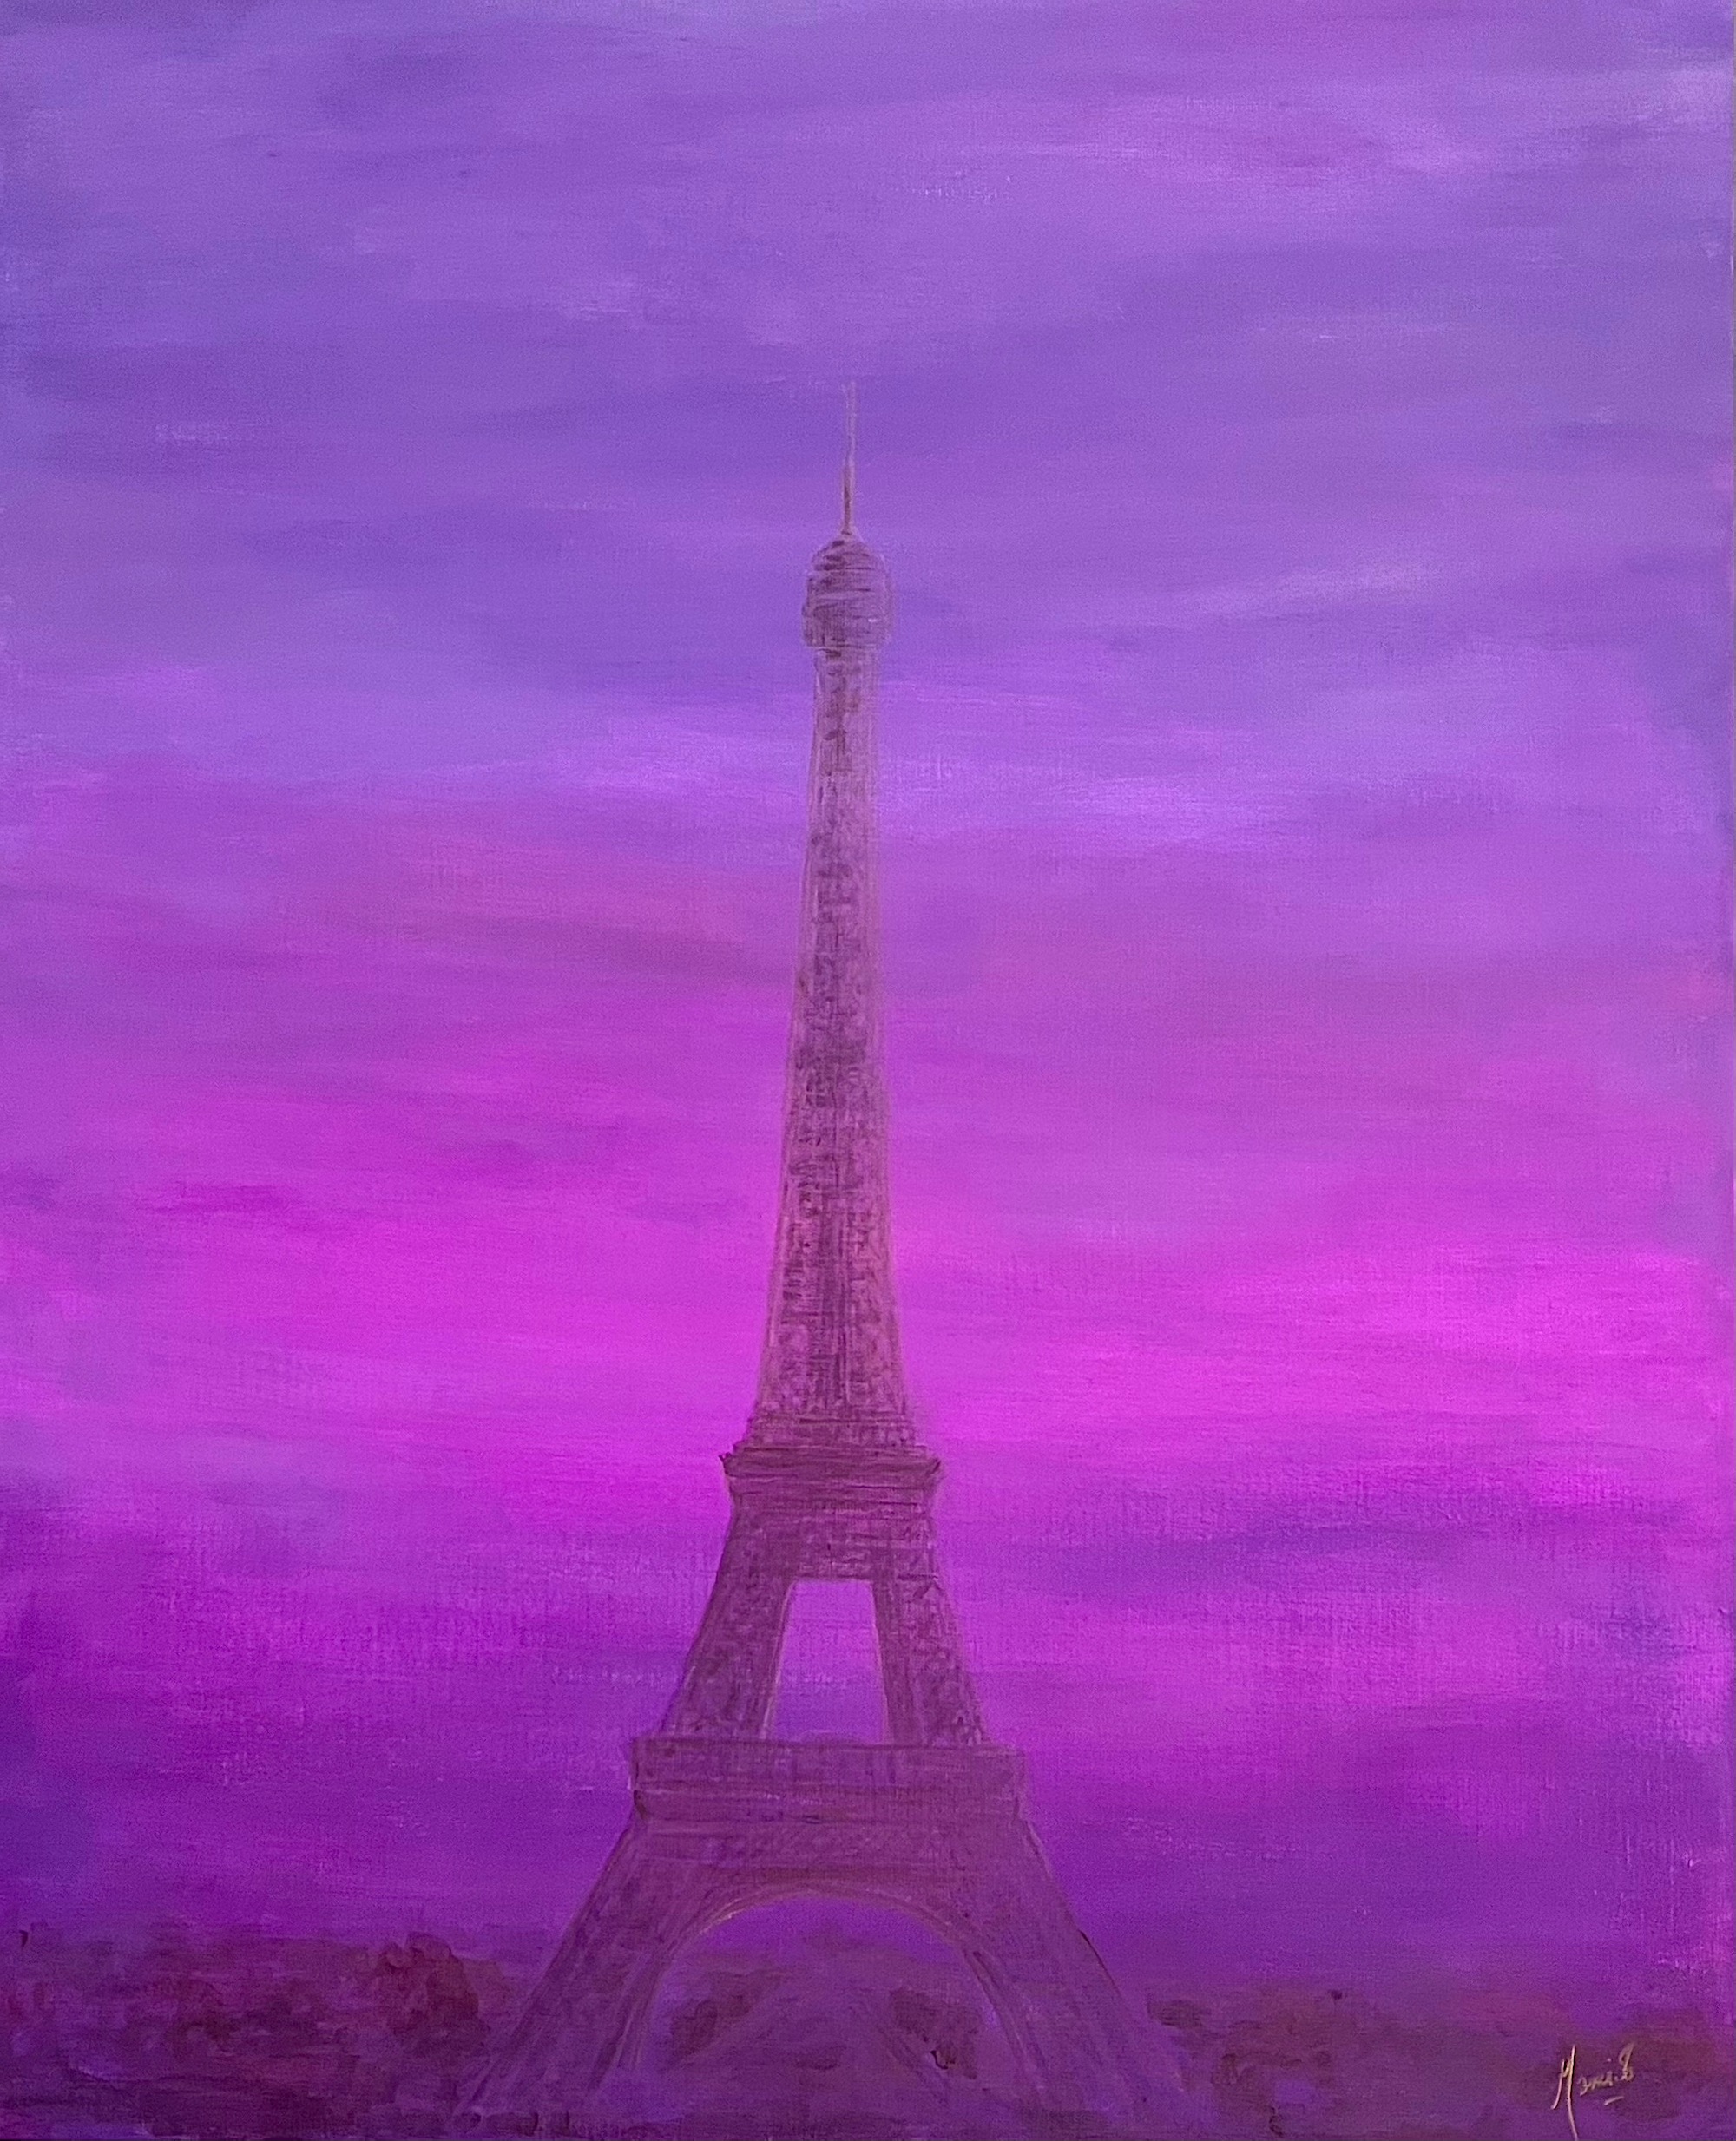 MAMI - Images et Poésie, Tour Eiffel day by day III - technique mixte sur toile - format L 81 x H 100cm.